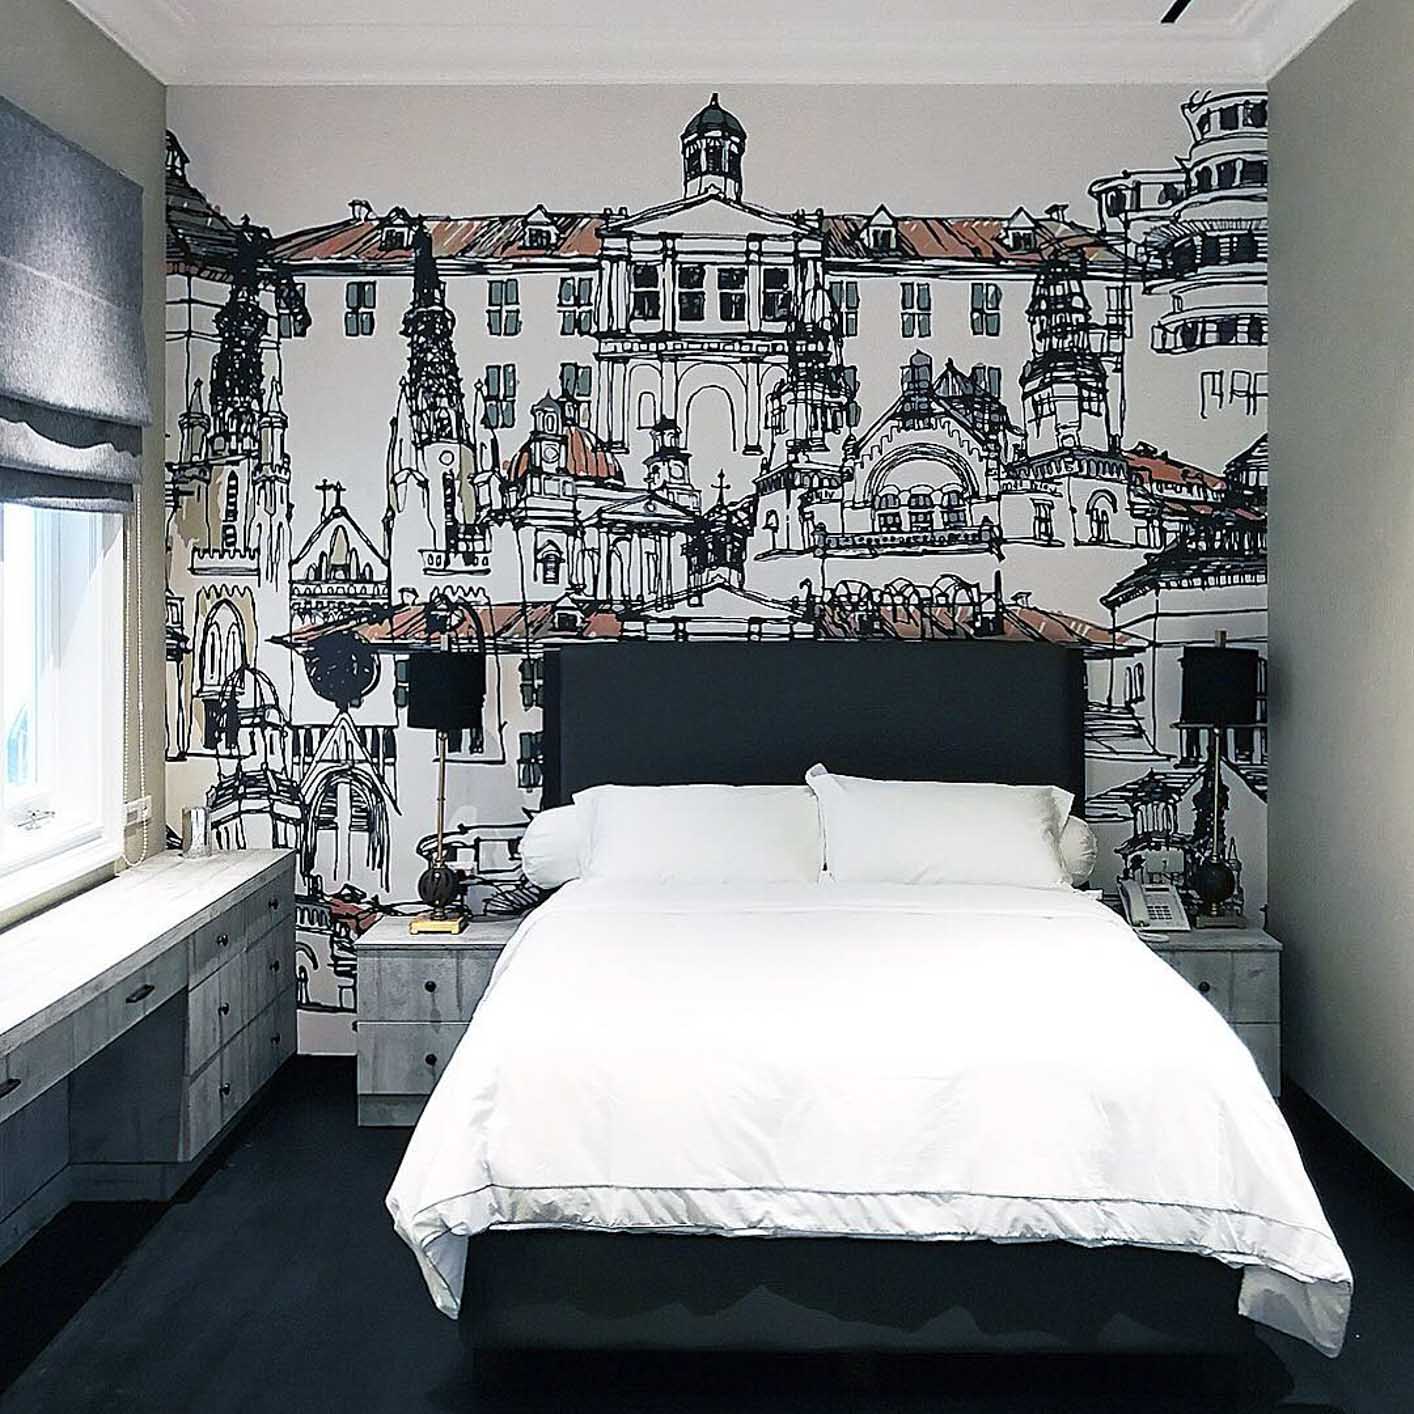 wallpaper untuk kamar tidur remaja